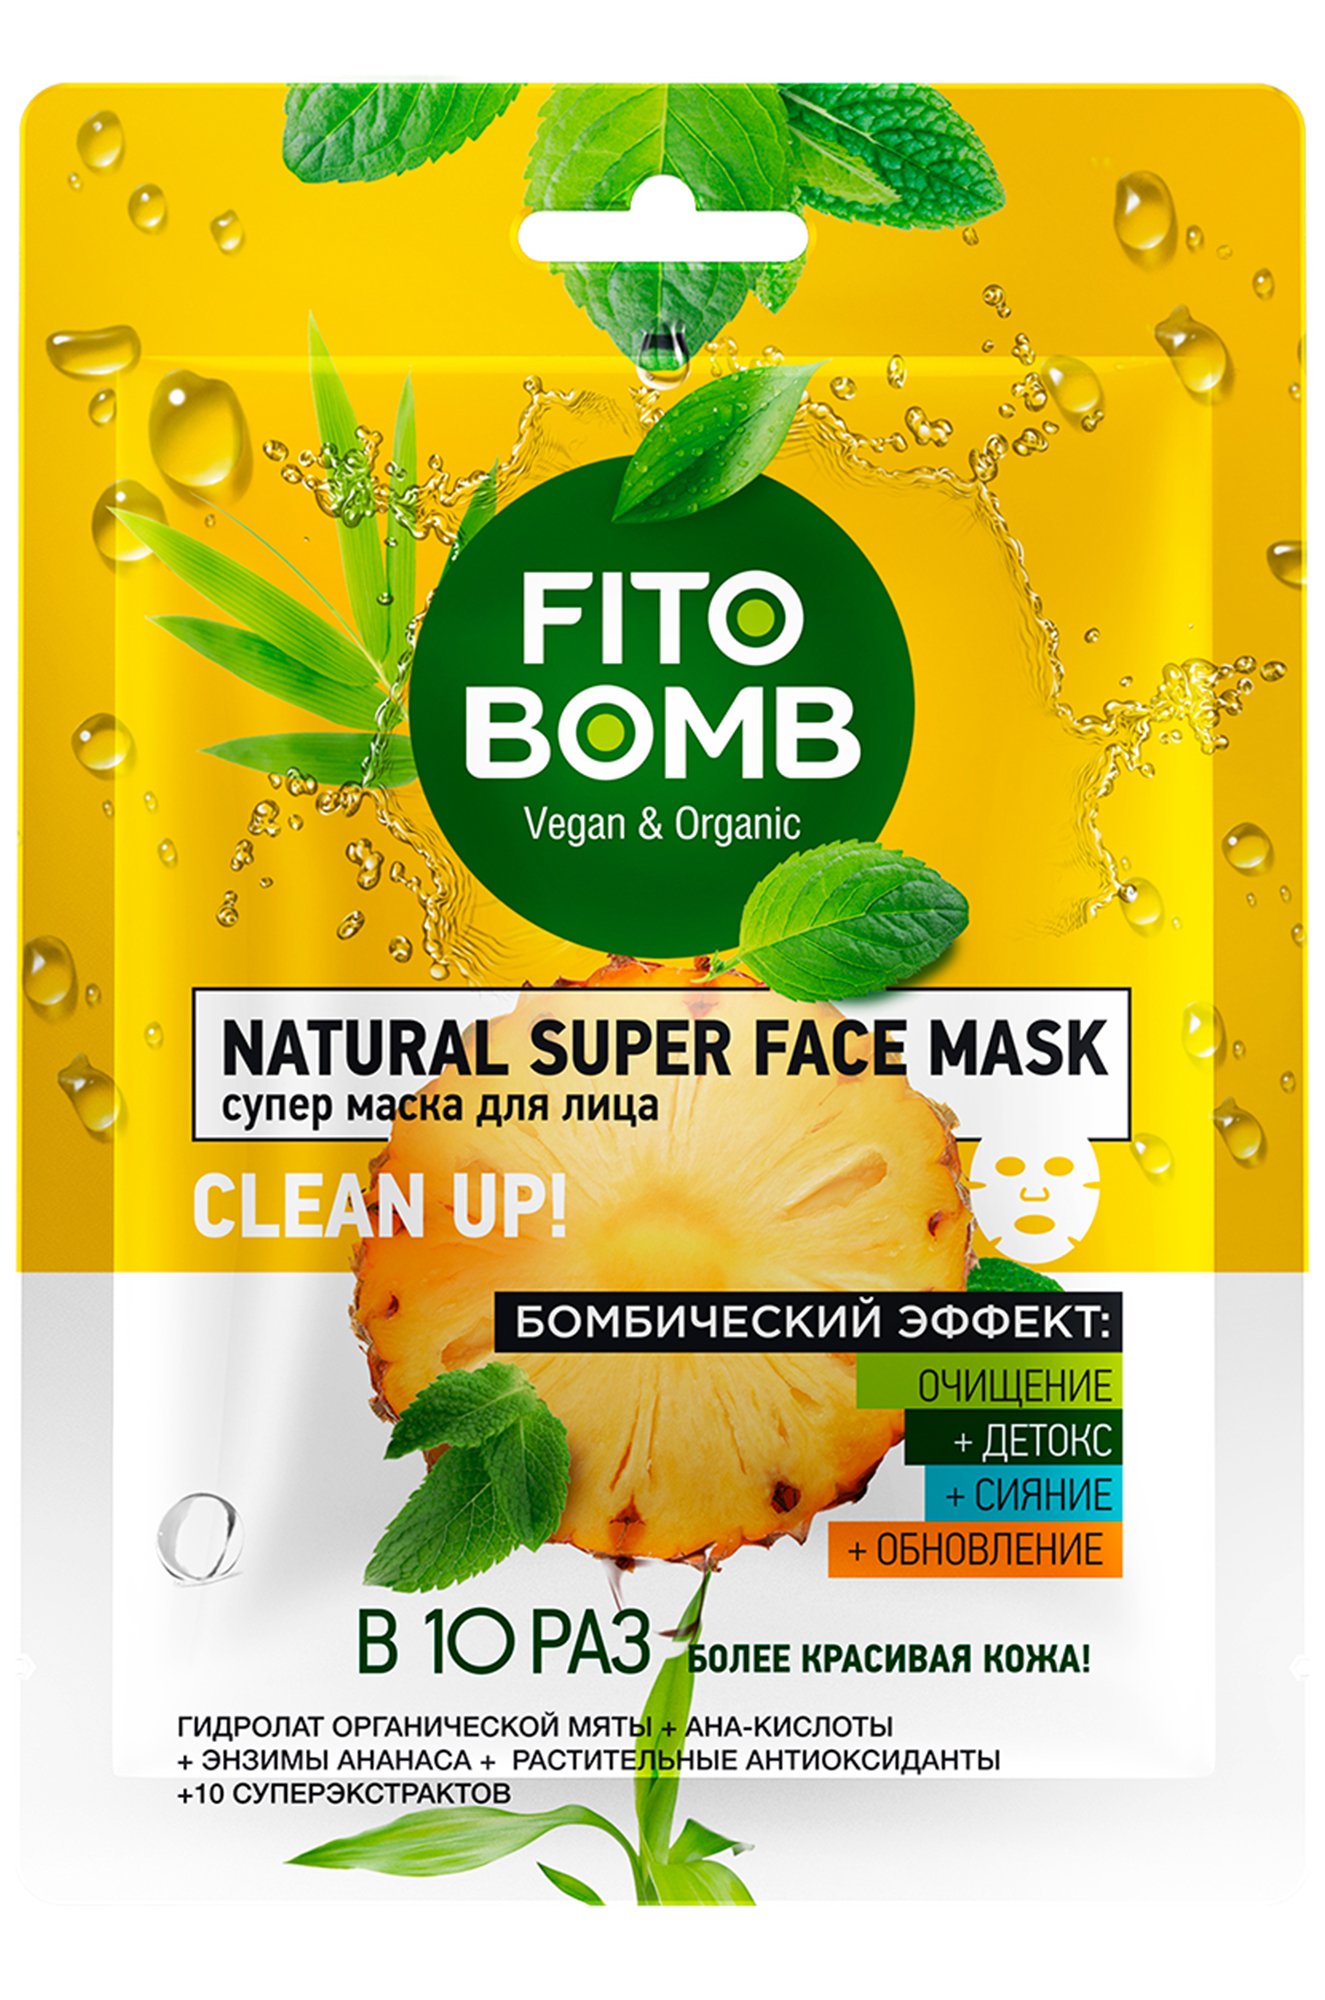 Супер маска для лица очищение, детокс, сияние, обновление 25 мл Fito косметик